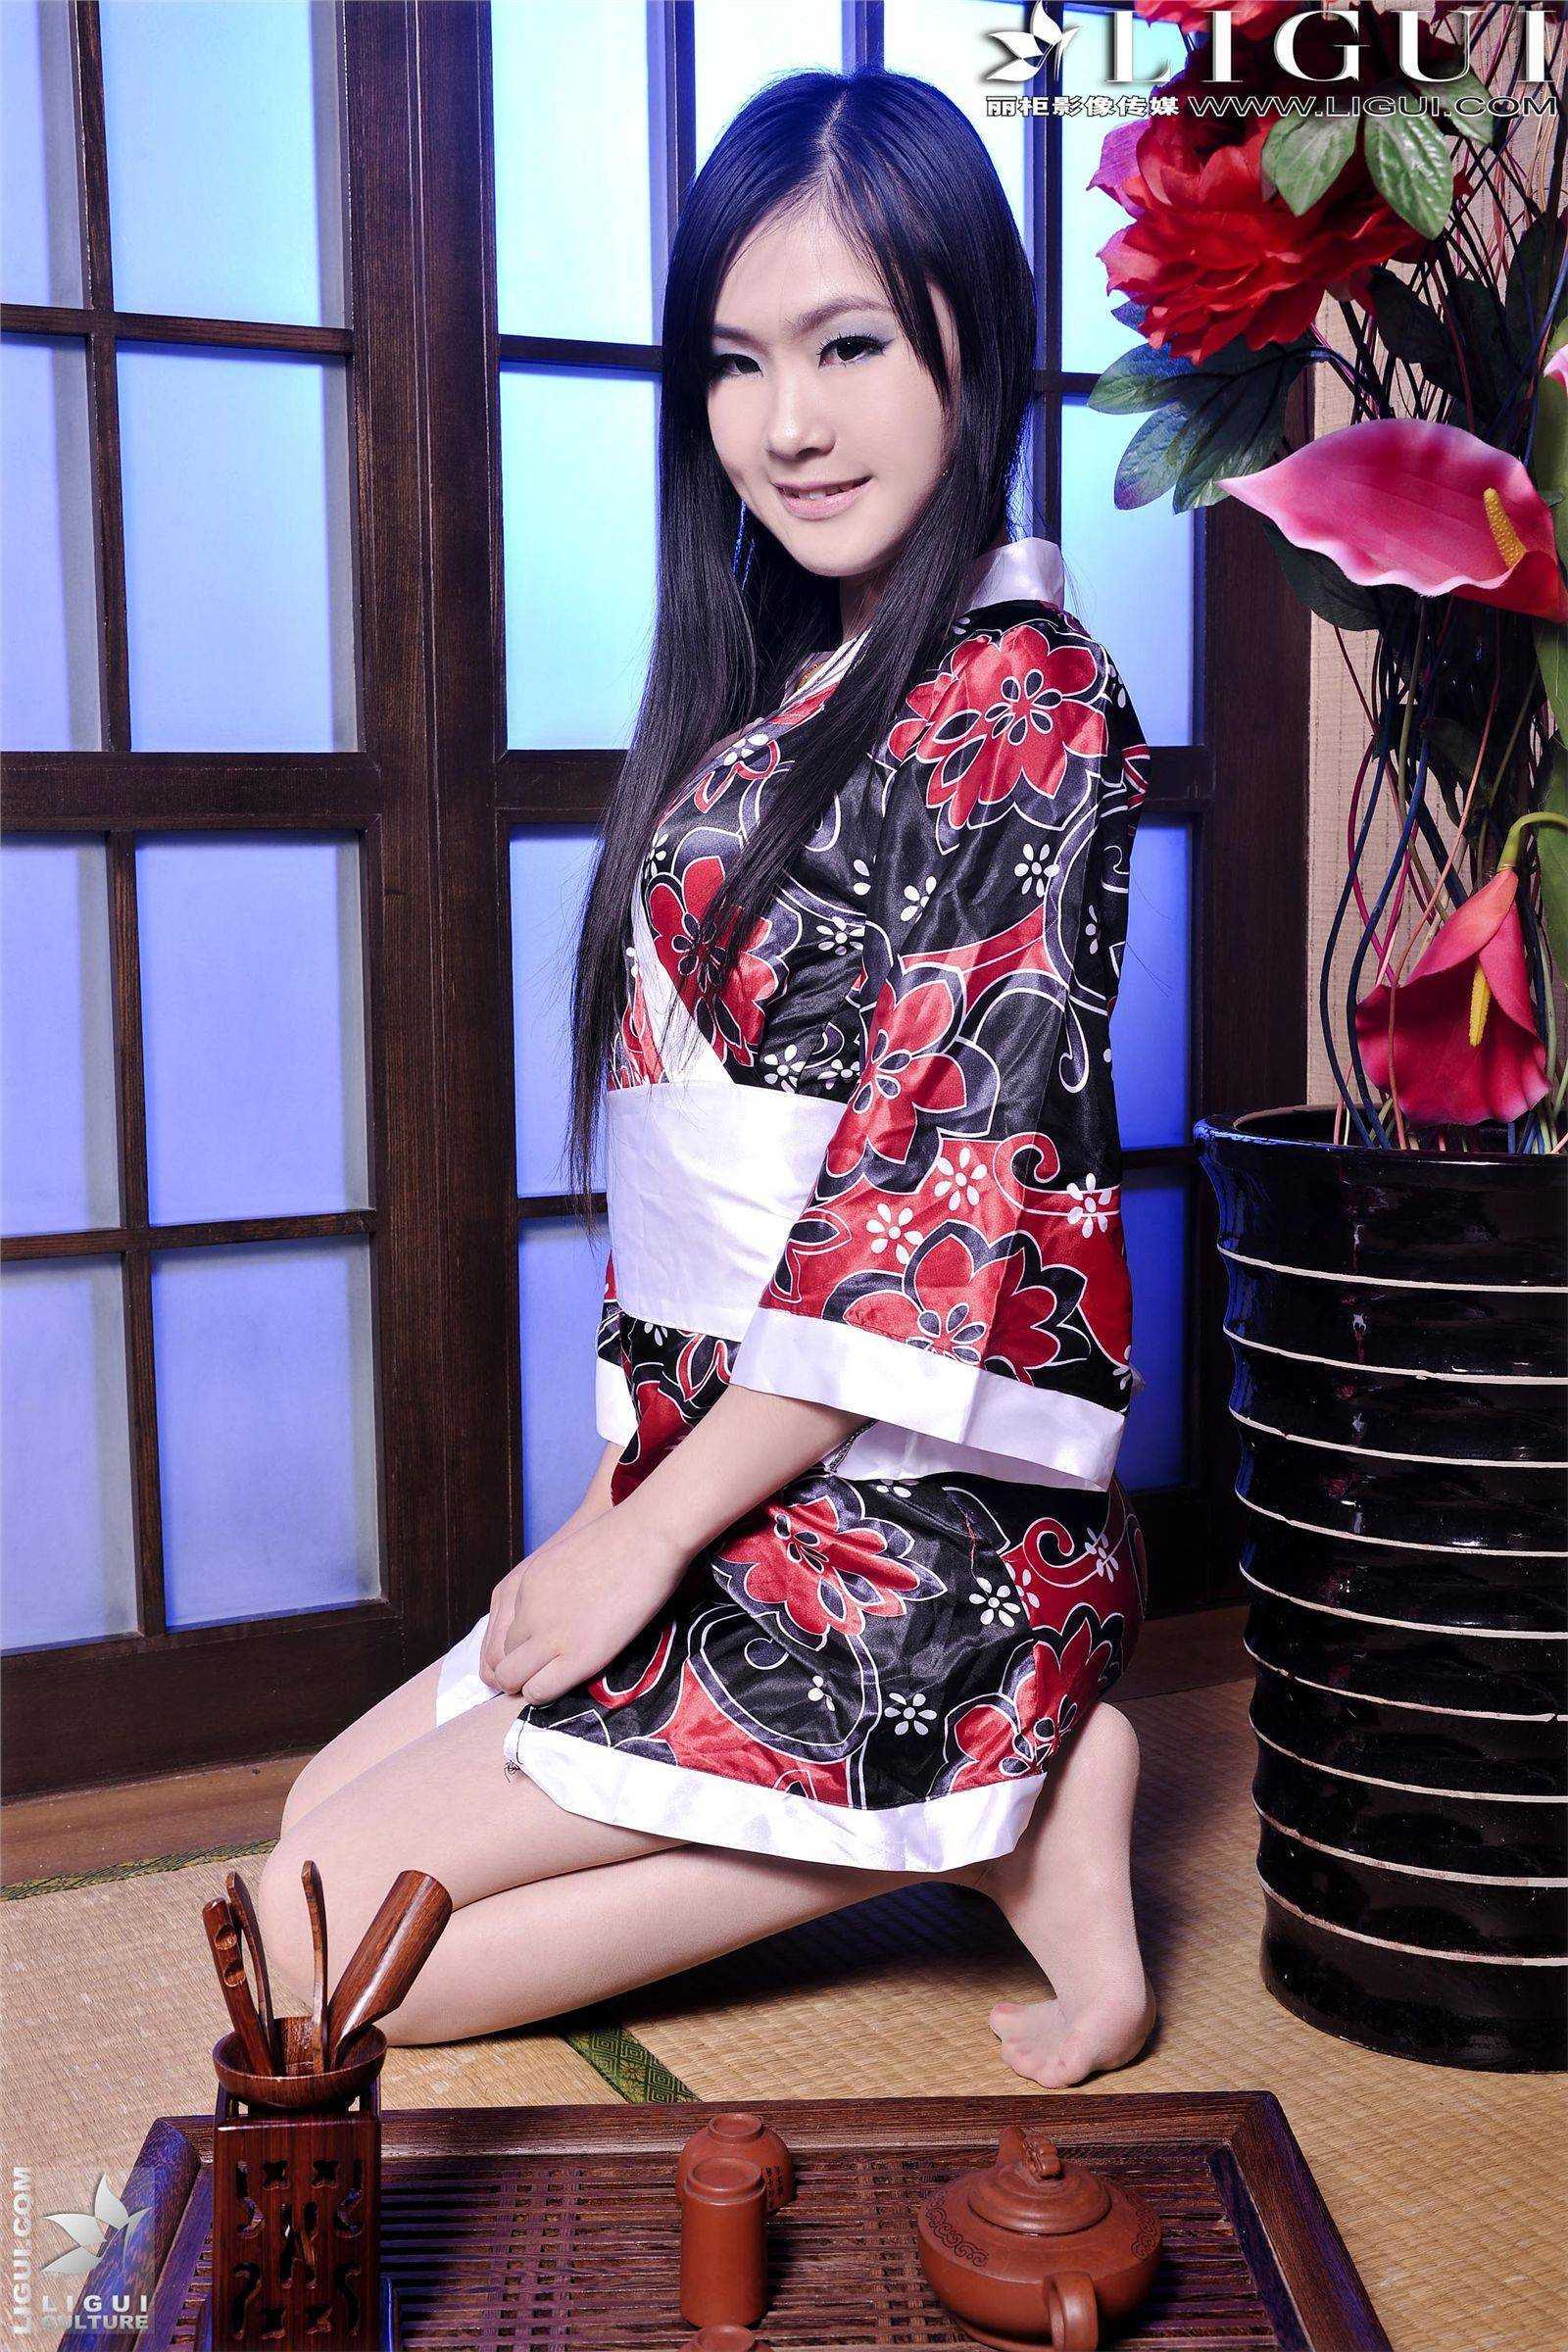 [Li cabinet] 2013 0322 online beauty model